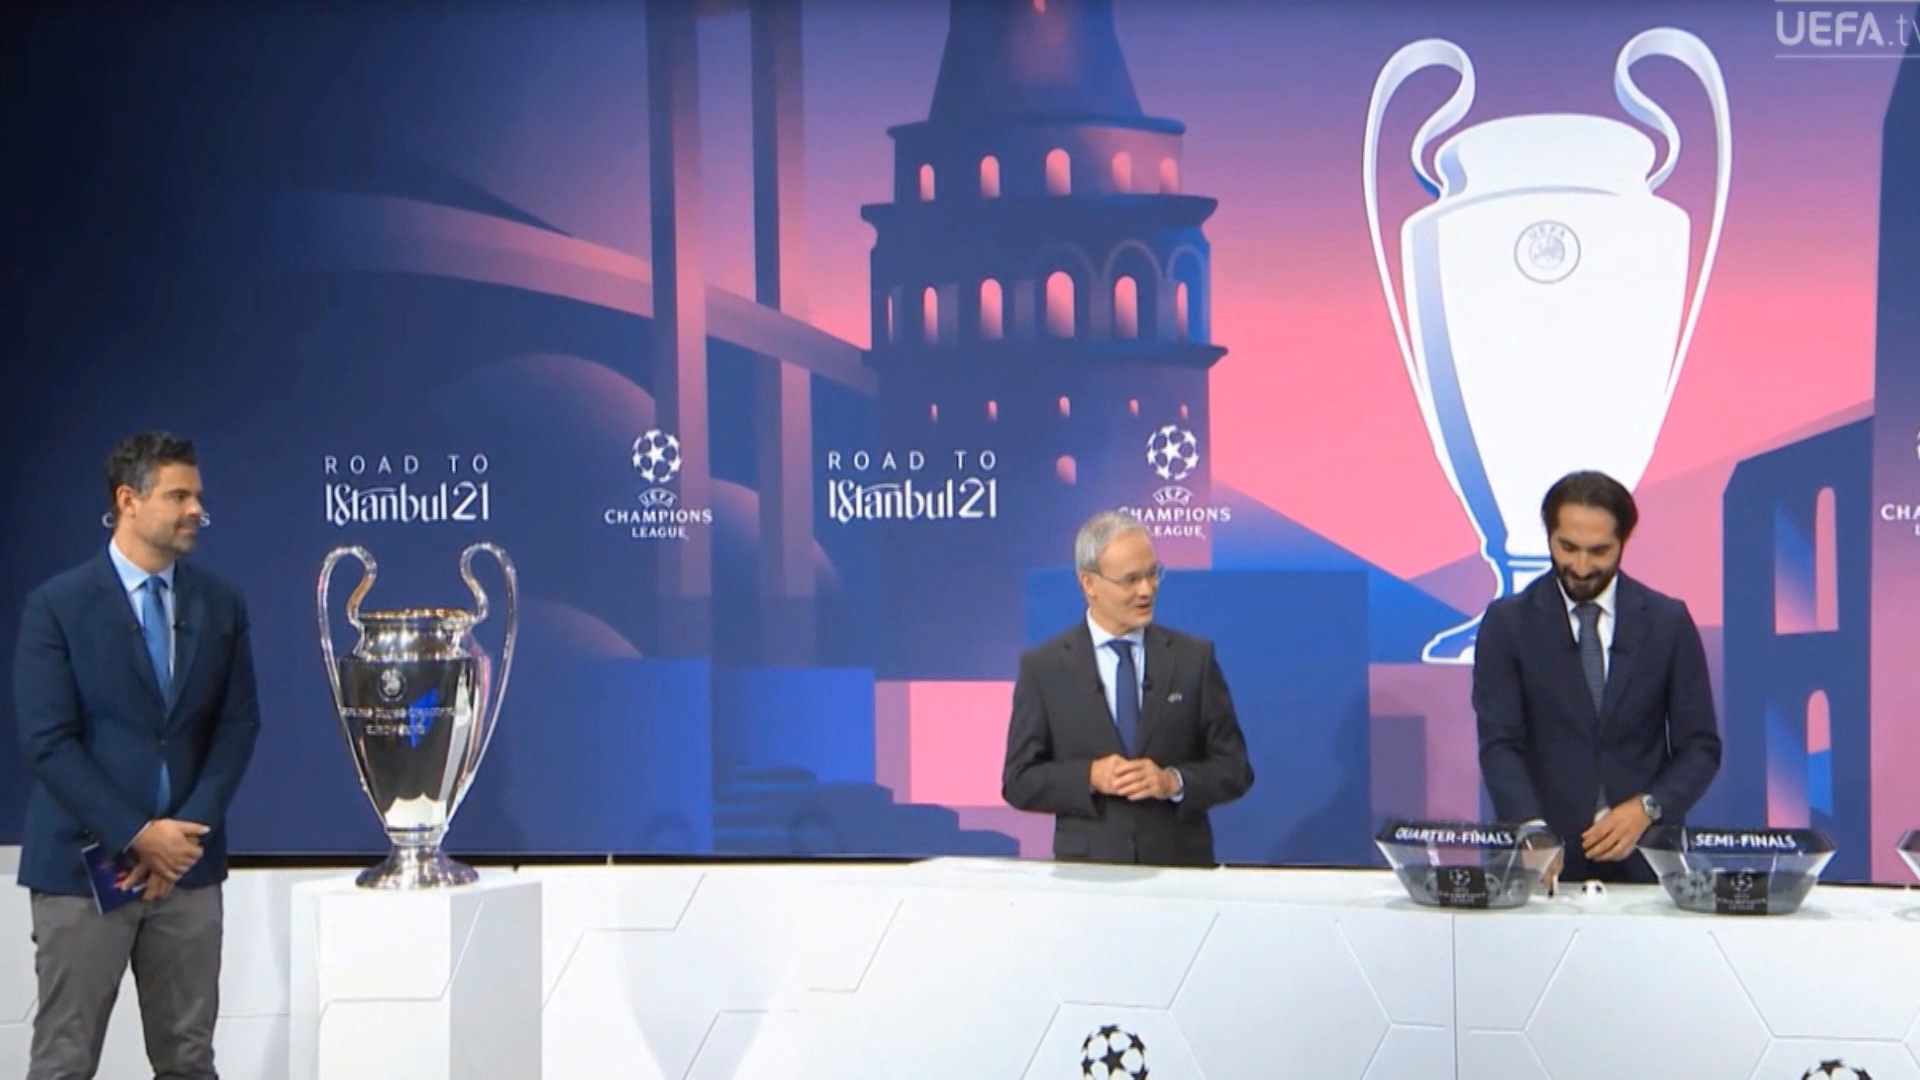 Përcaktohet rruga drejt Stambollit, Bayern-PSG dhe Real-Liverpool superpërballjet e çerekfinaleve të Champions